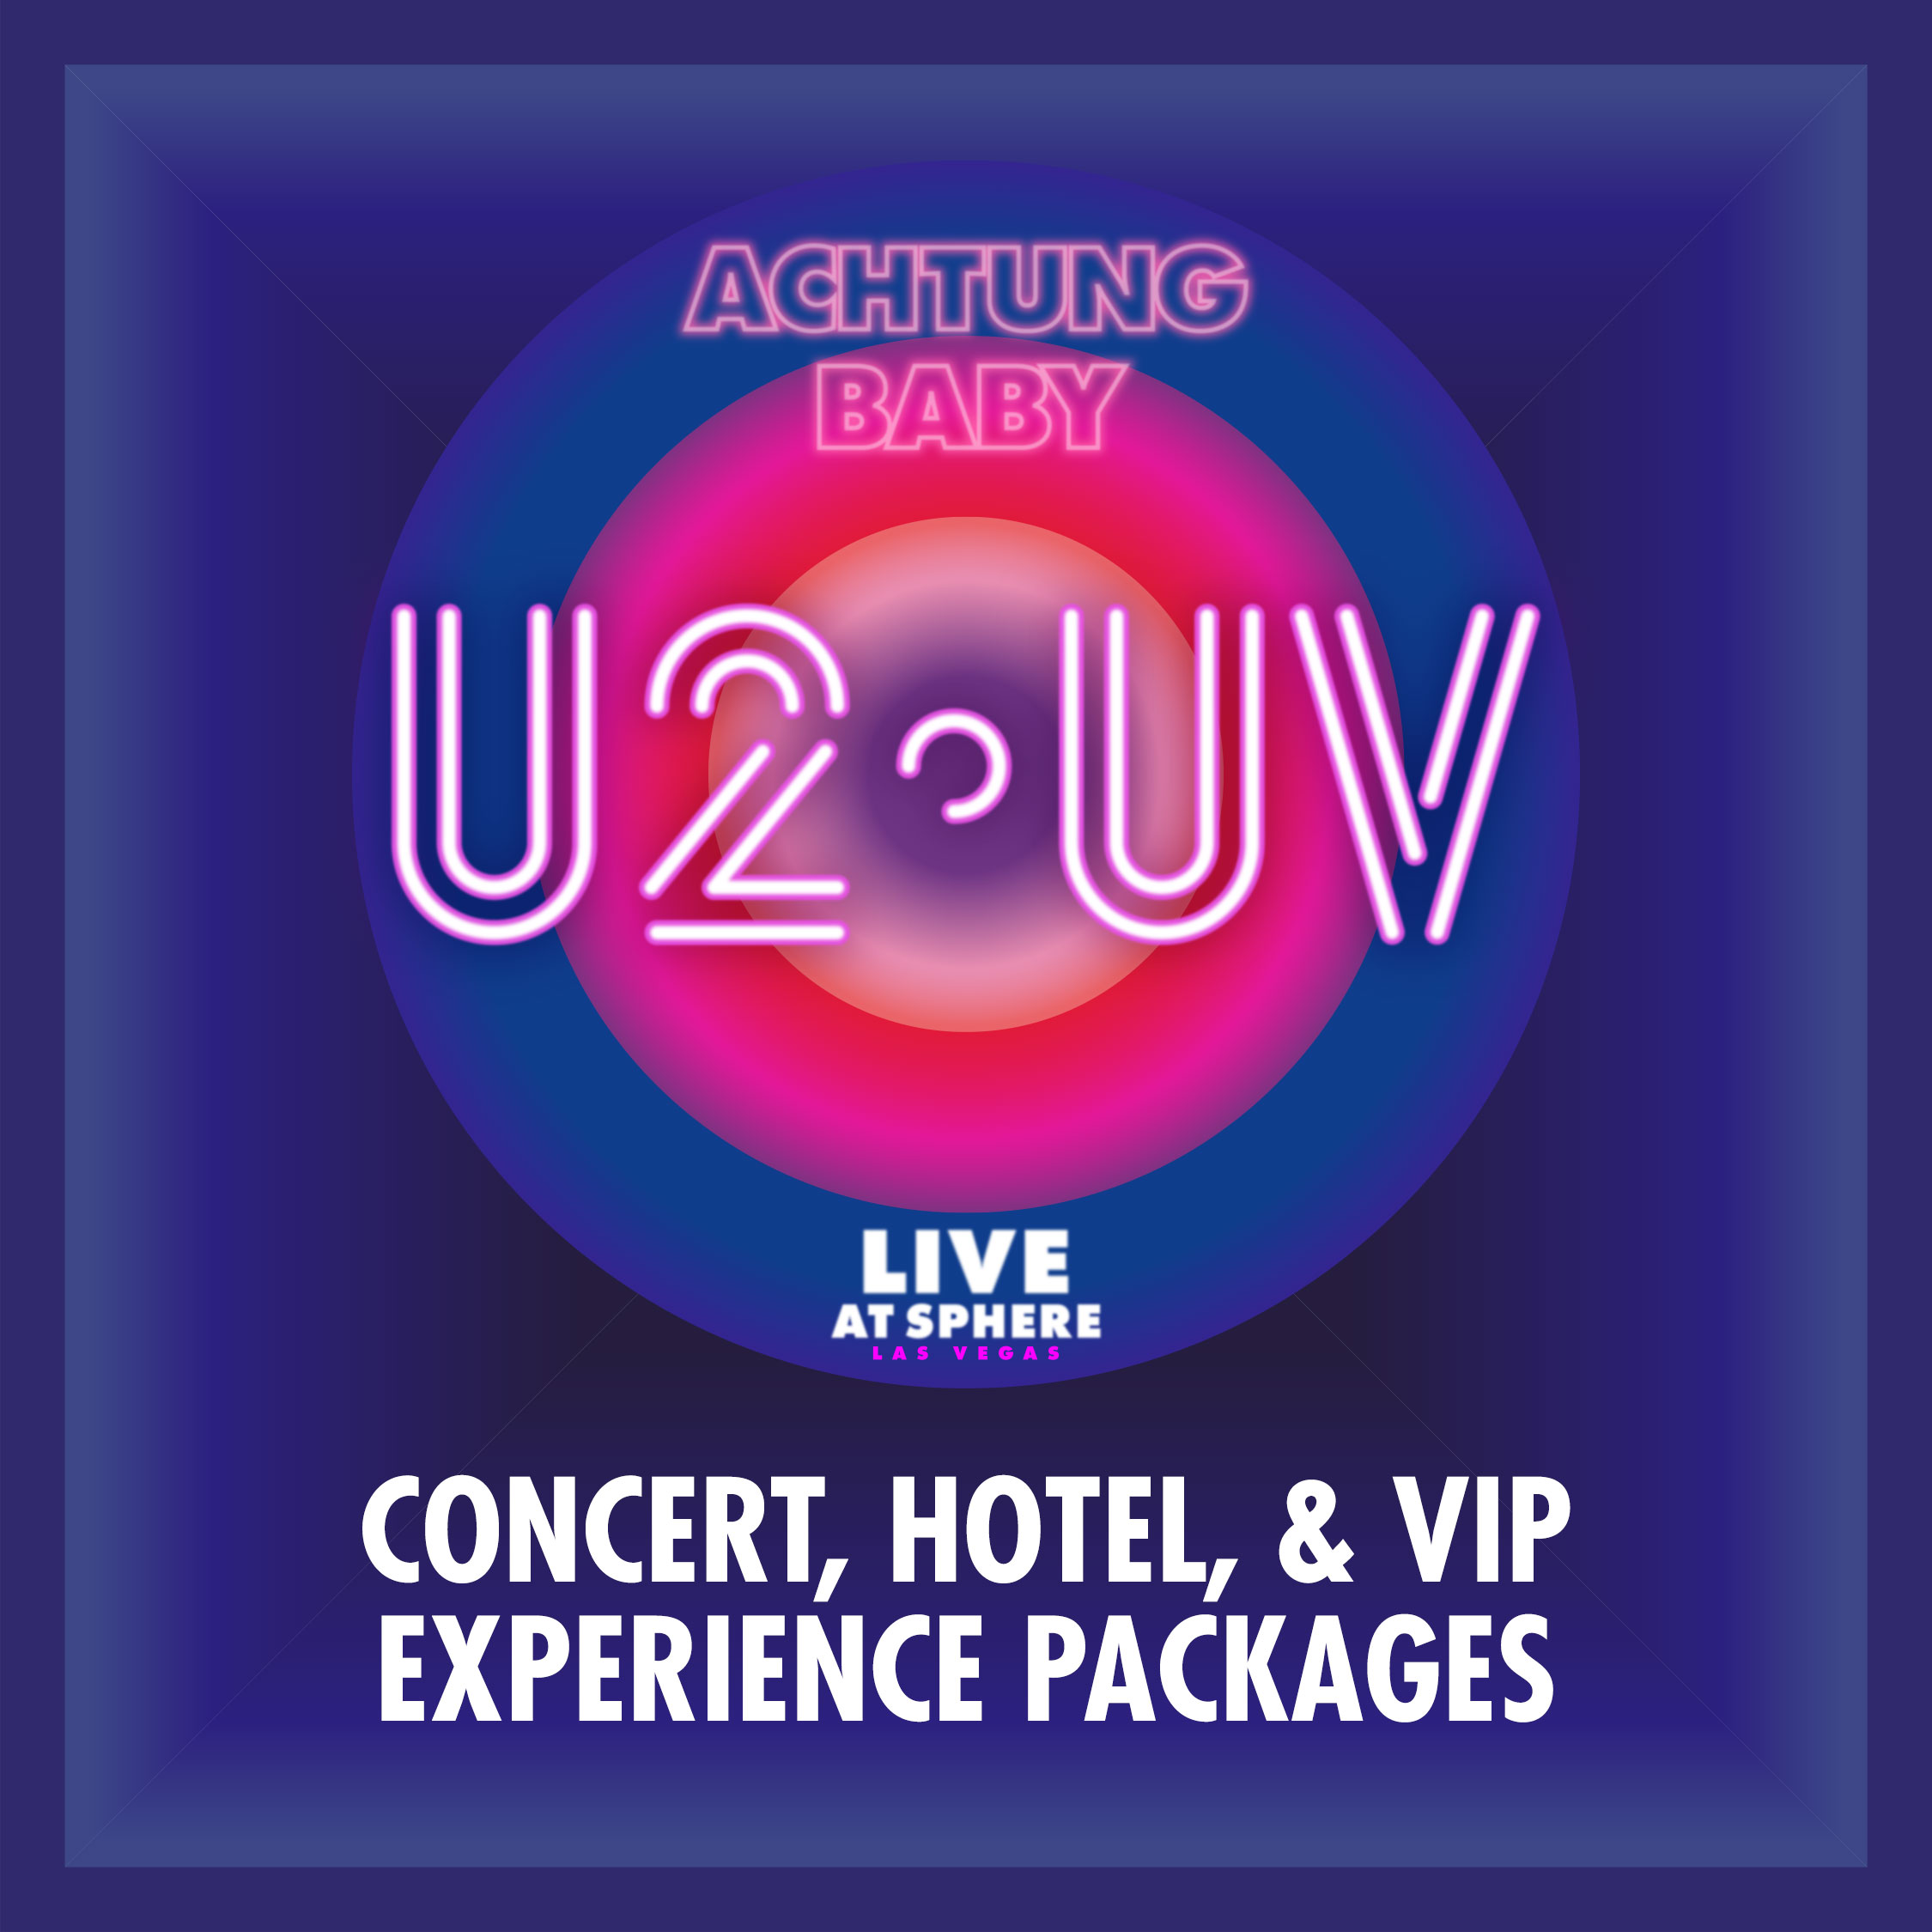 The Ultimate U2 Experience in Las Vegas Header